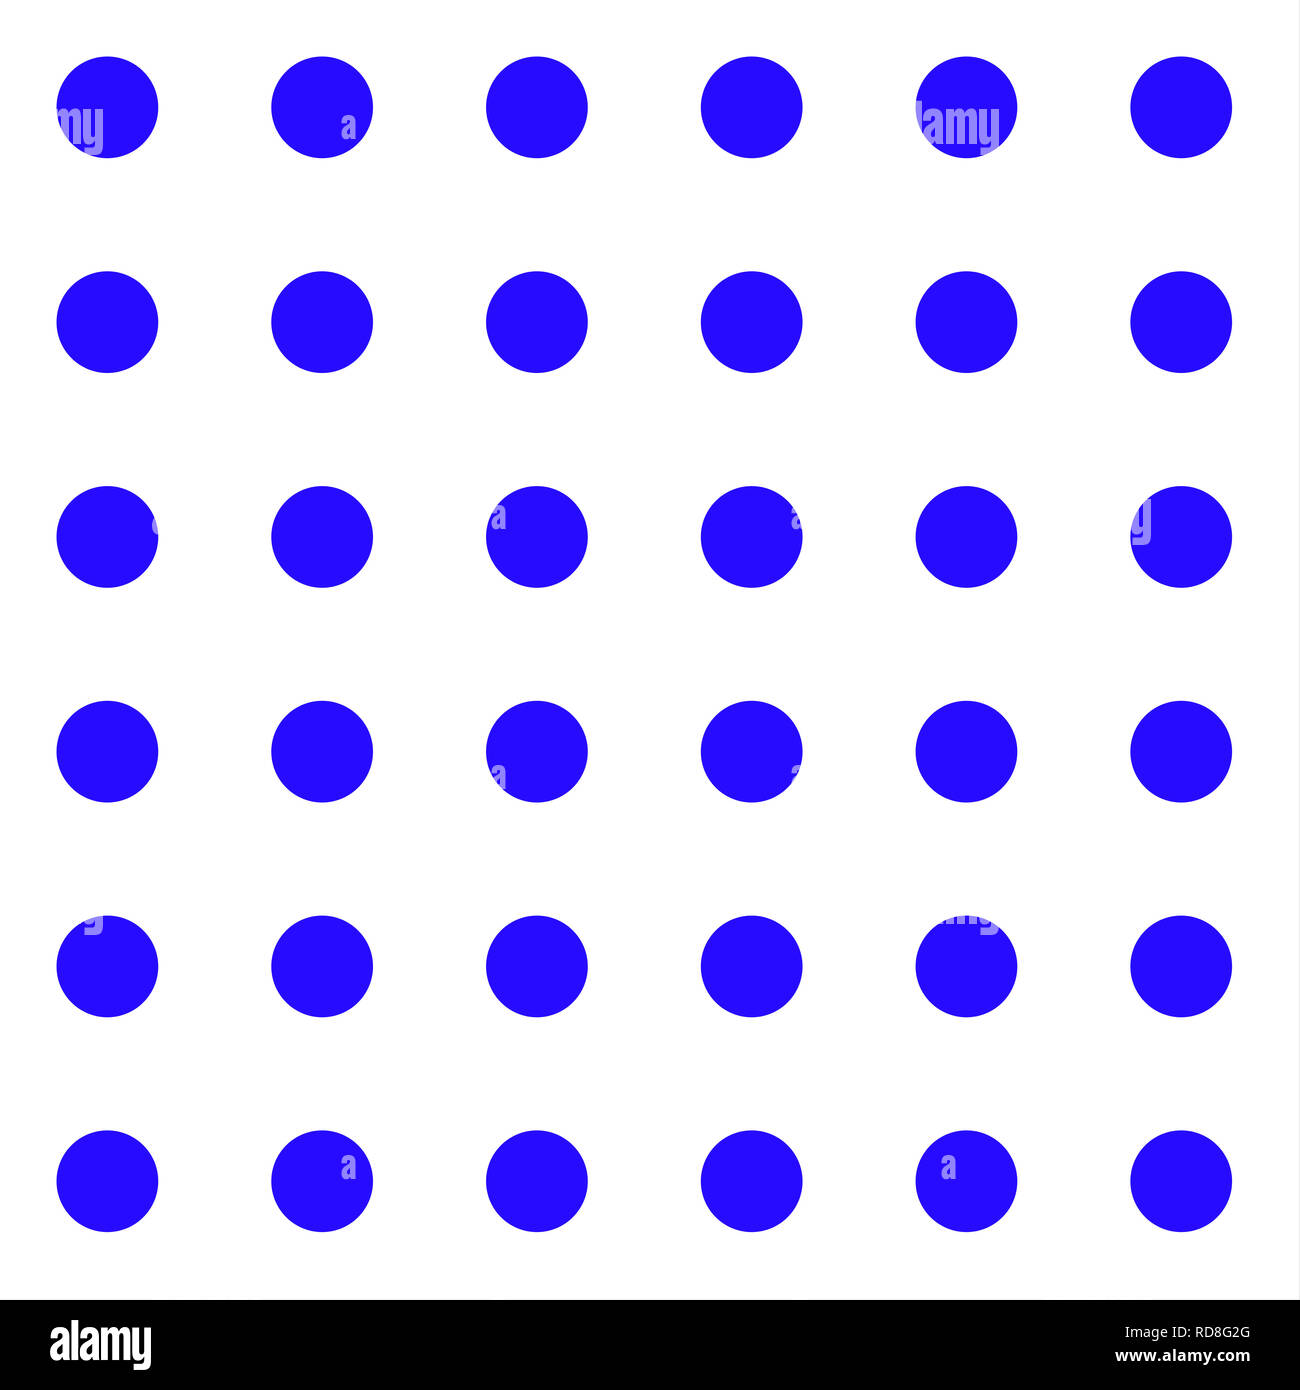 Un motif répétitif de gros points bleus sur fond blanc Banque D'Images